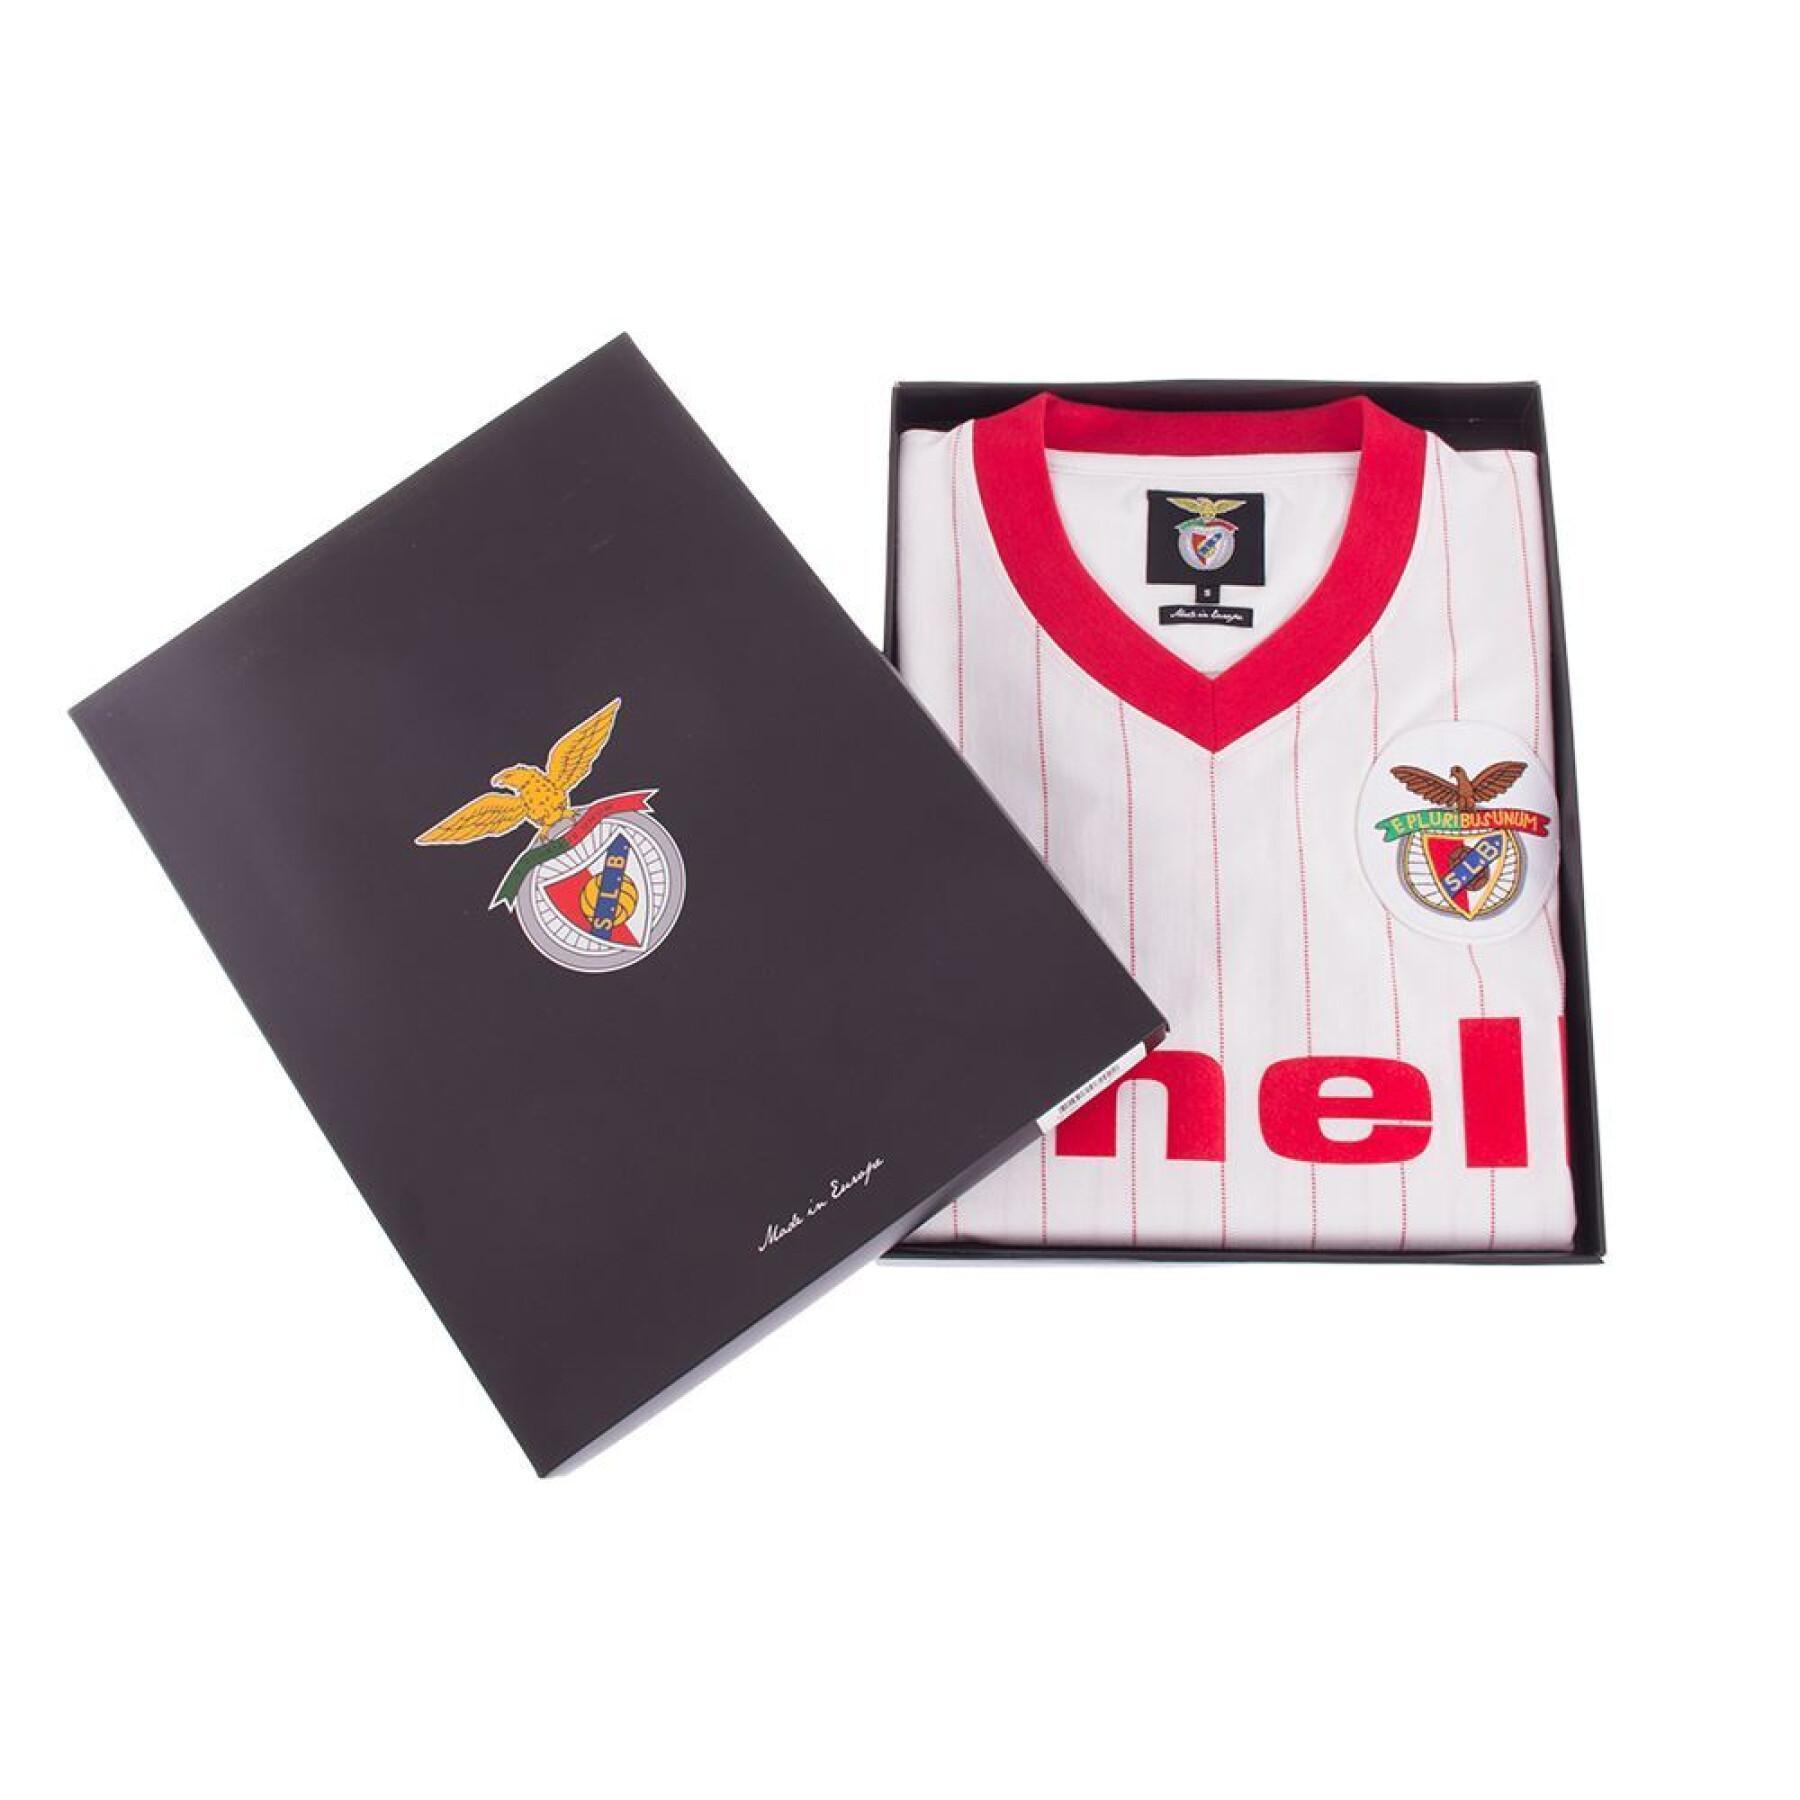 Camiseta segunda equipación Benfica Lisbonne 1985/86